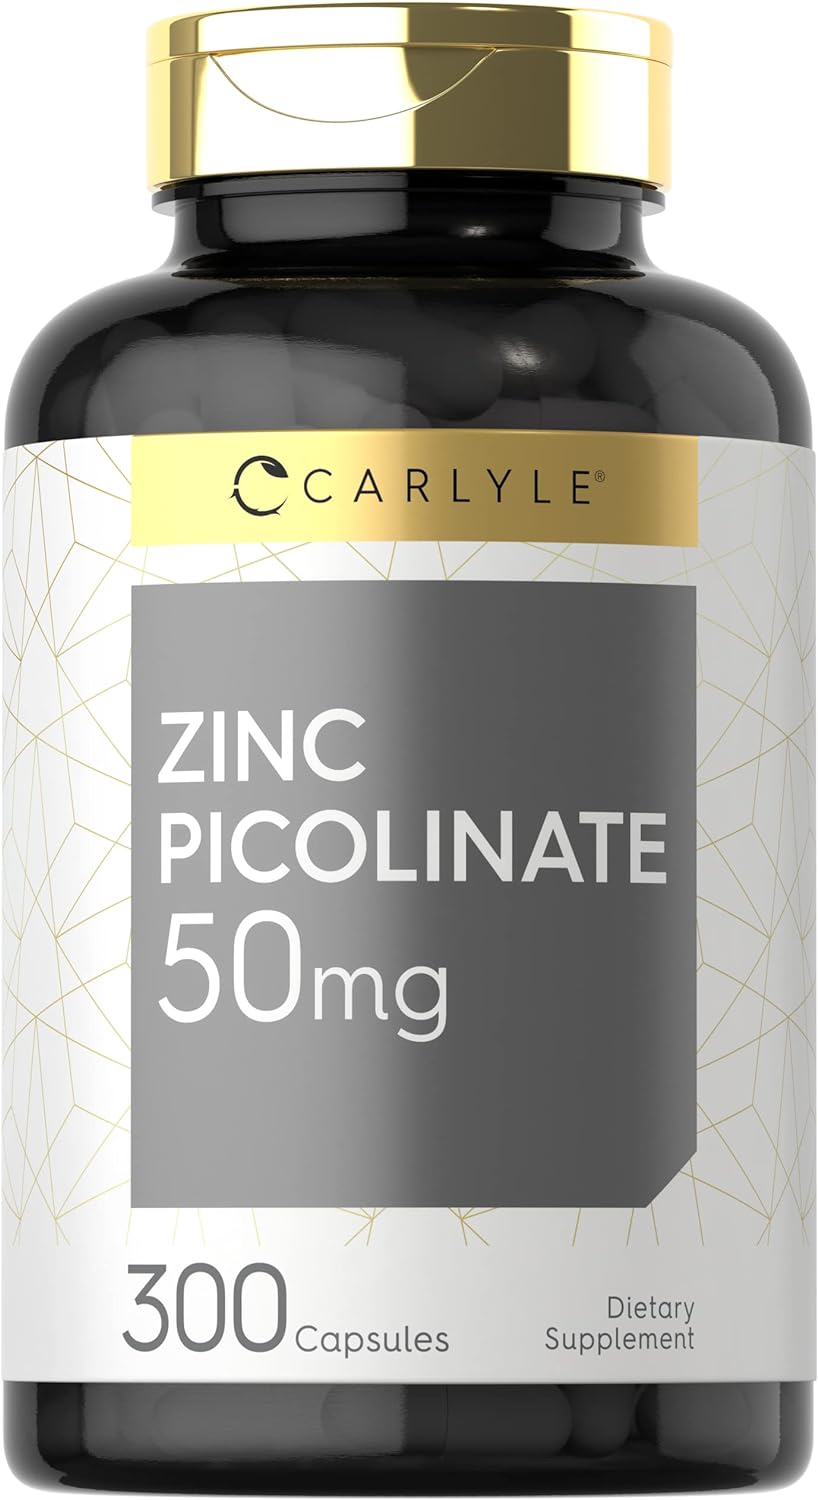 Zinc Picolinate 50mg | 300 Capsules | Value Size | Non-GMO and Gluten